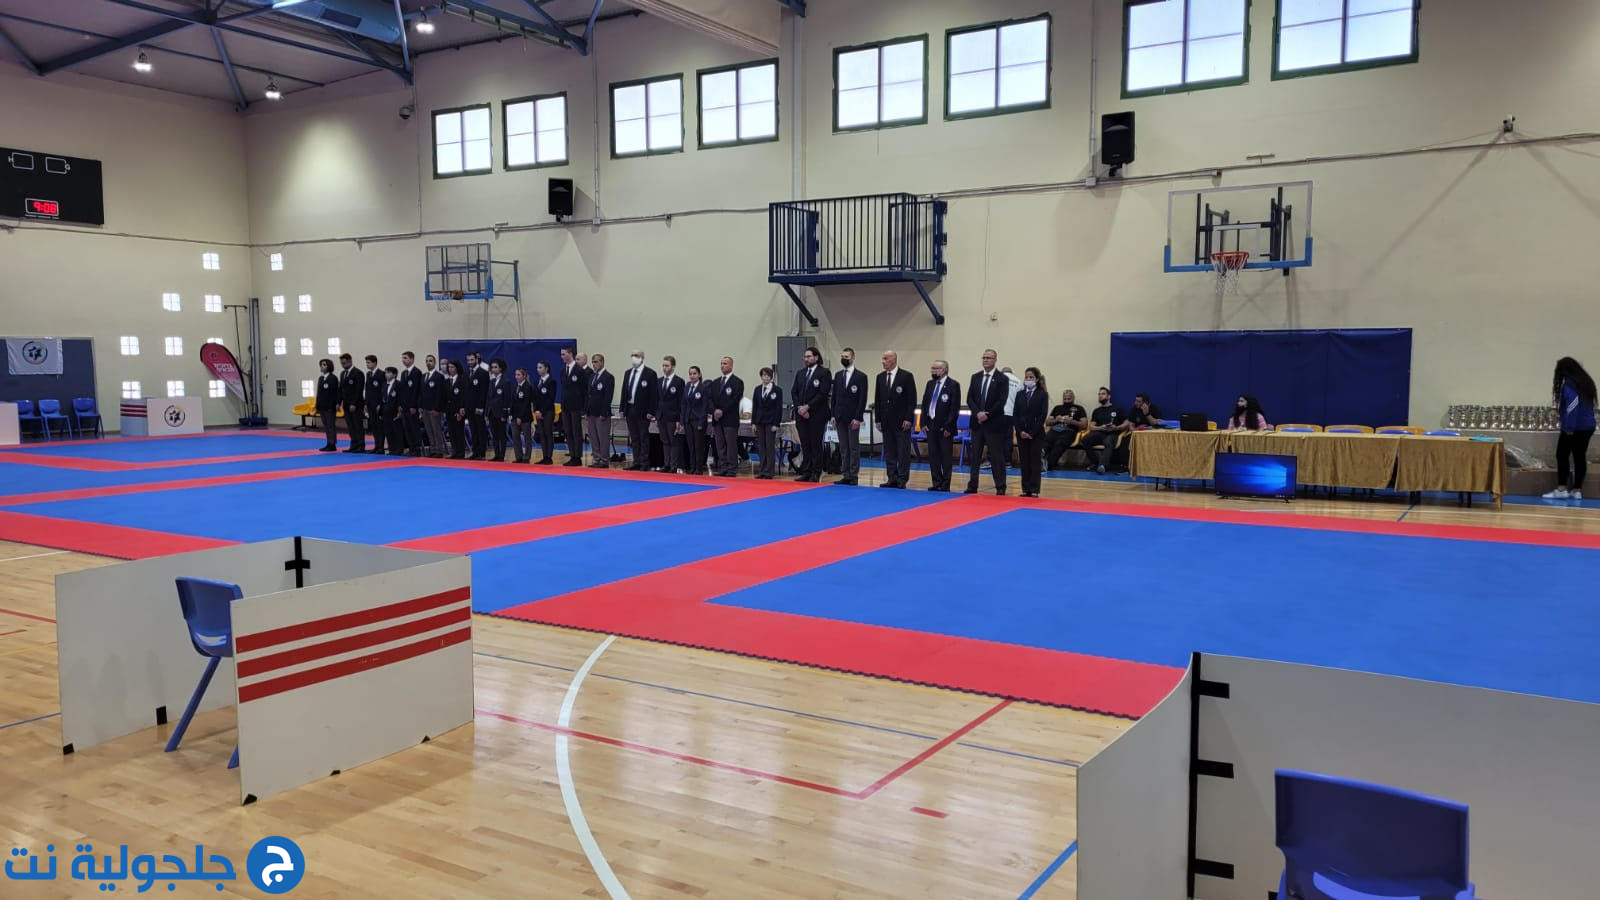 مدرسة hosni kai karate تشارك في بطولة مكابي اشدود الخامسة